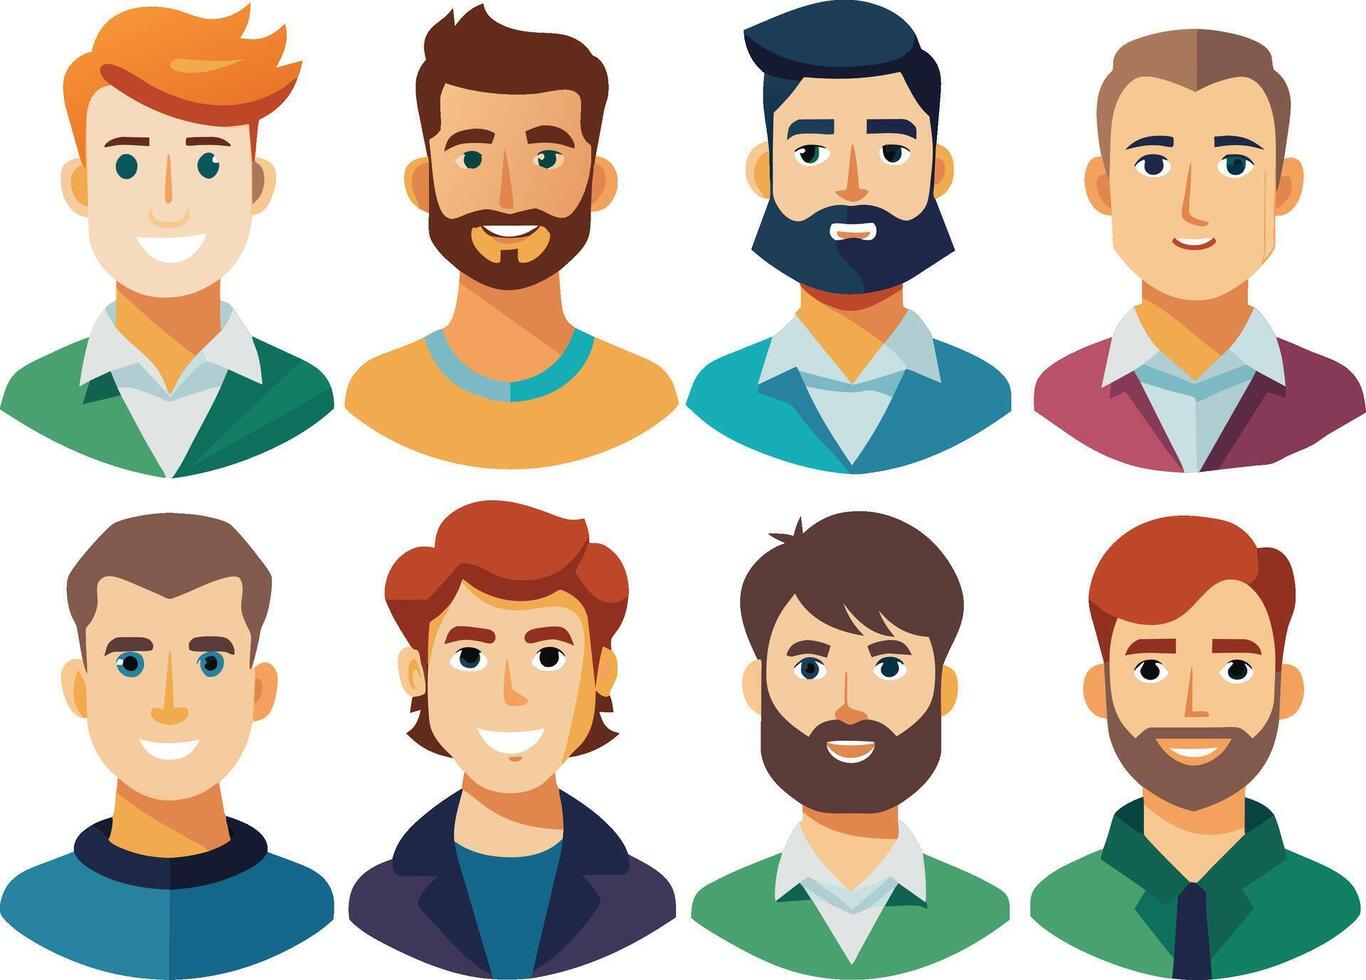 reeks van mannen avatars met verschillend gelaats uitdrukkingen. vector illustratie.